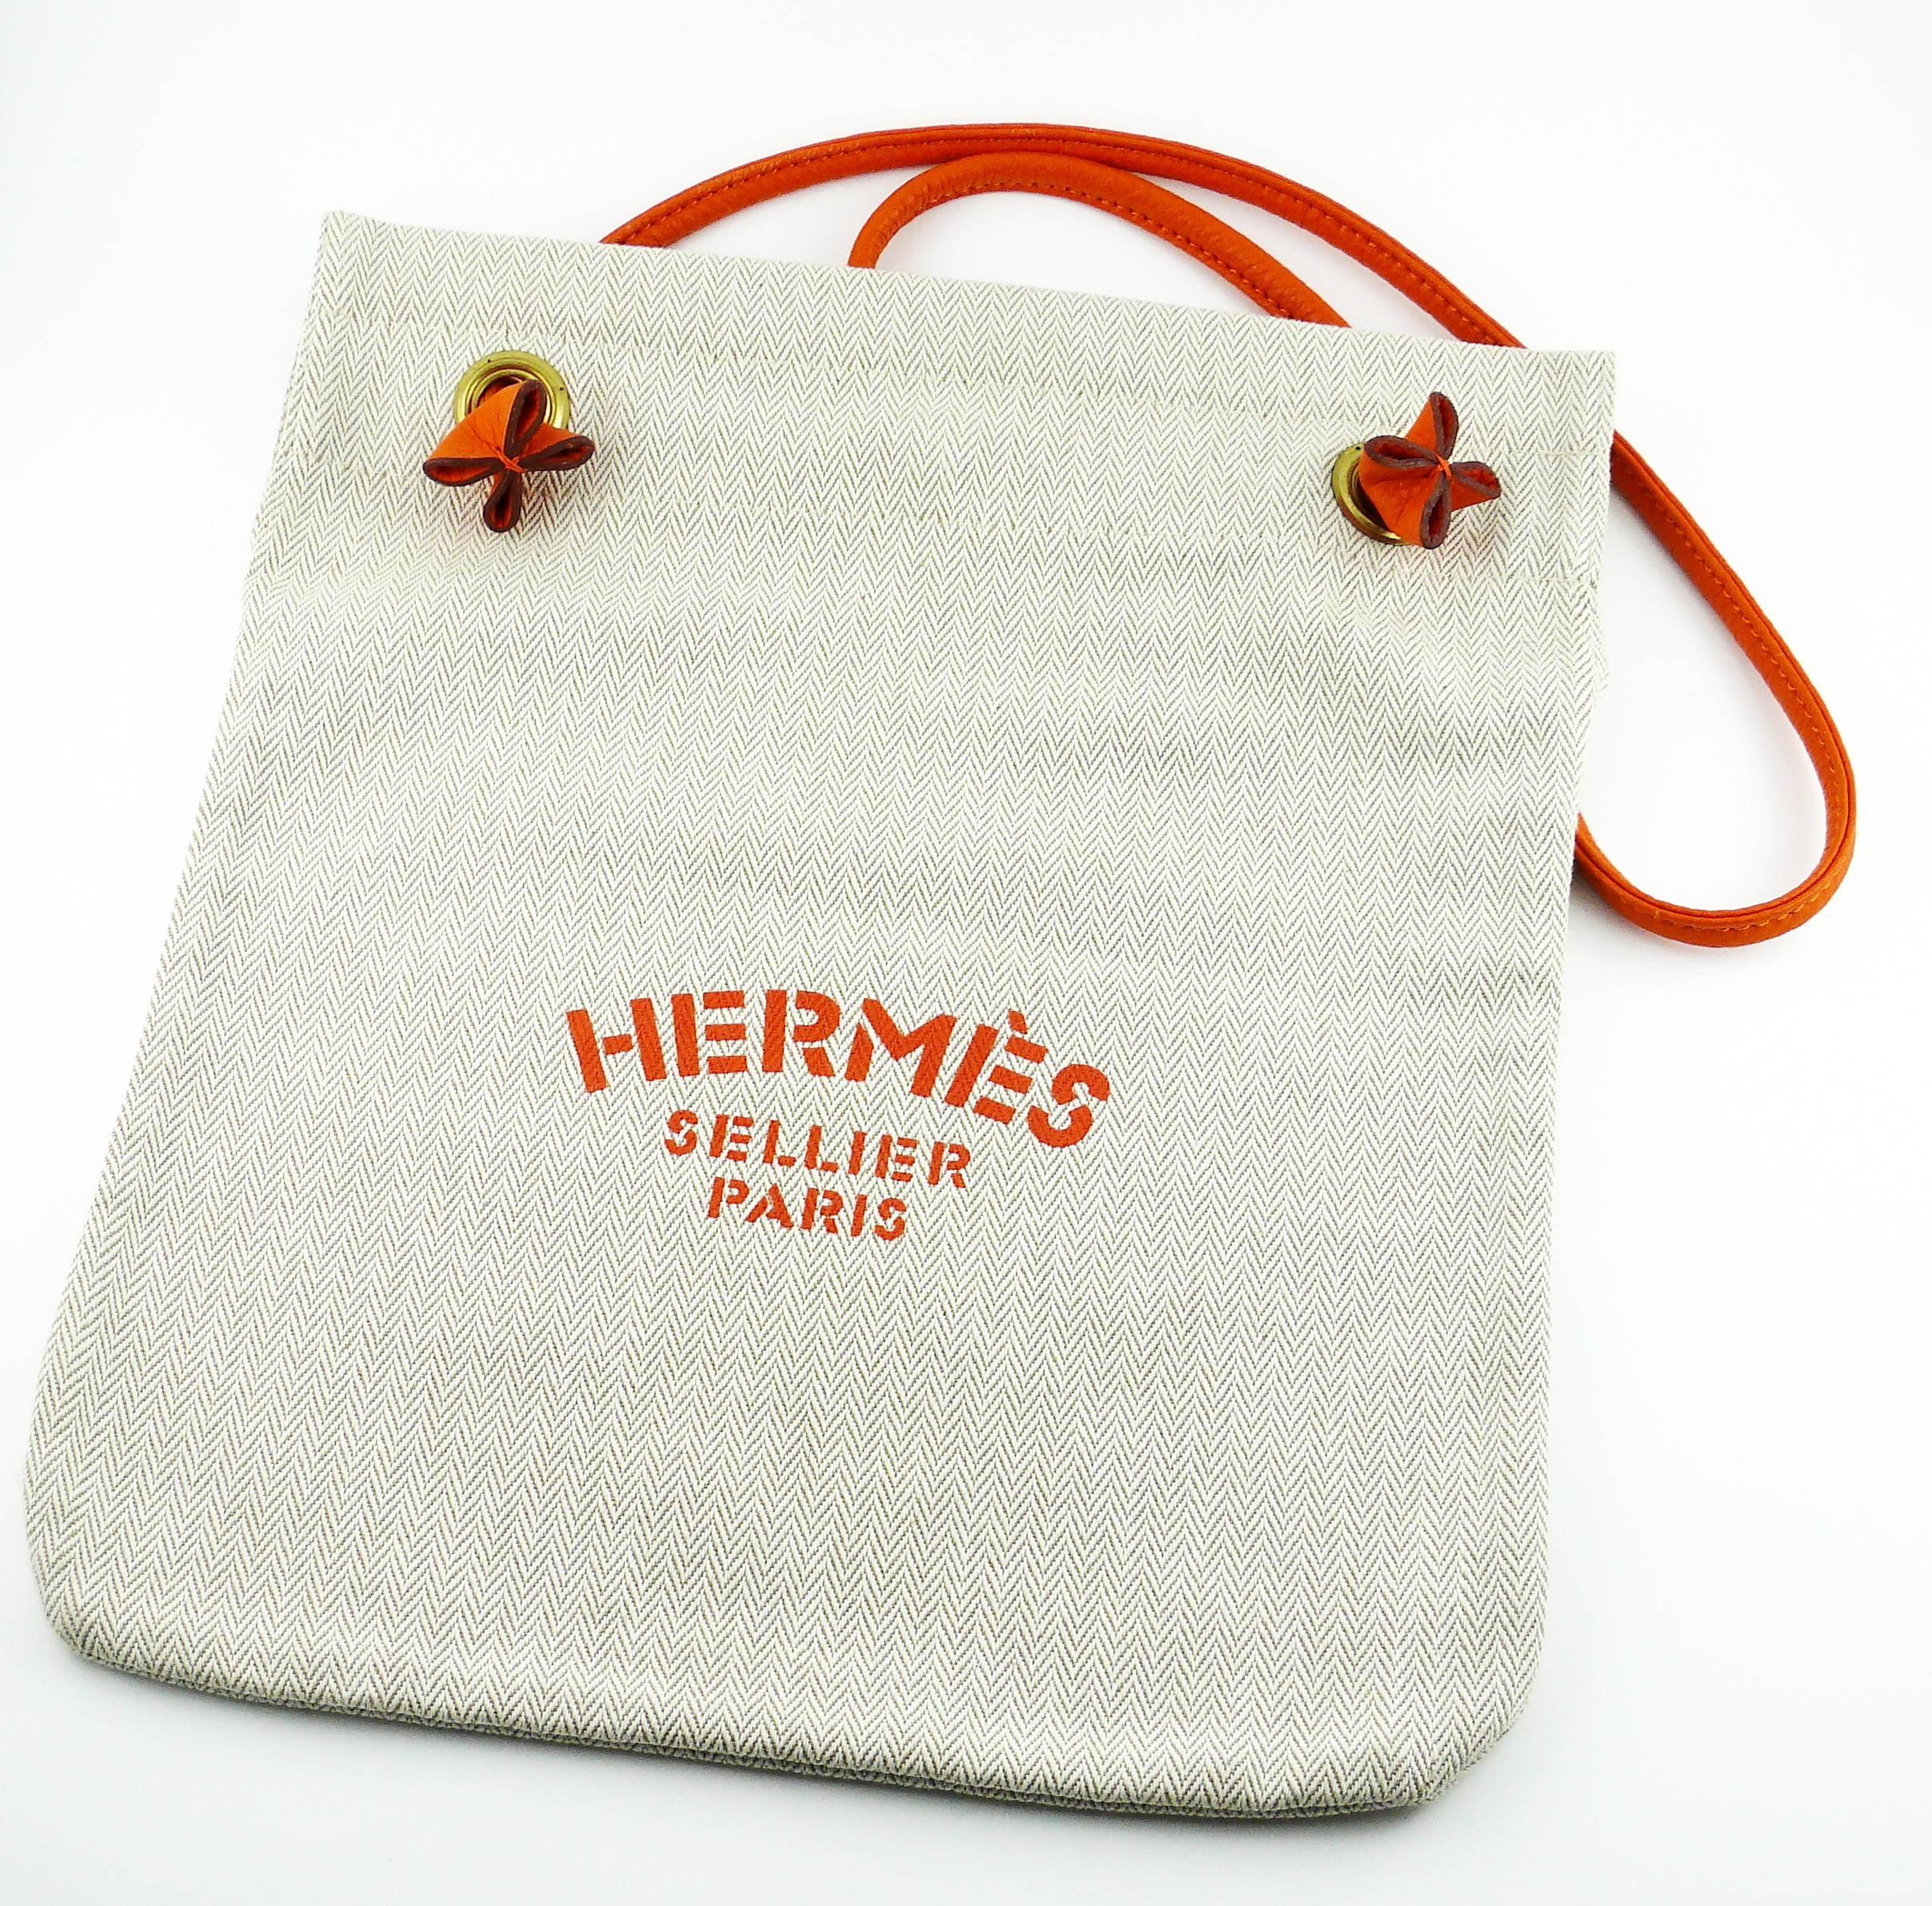 HERMES vintage Aline PM canvas shoulder bag with 